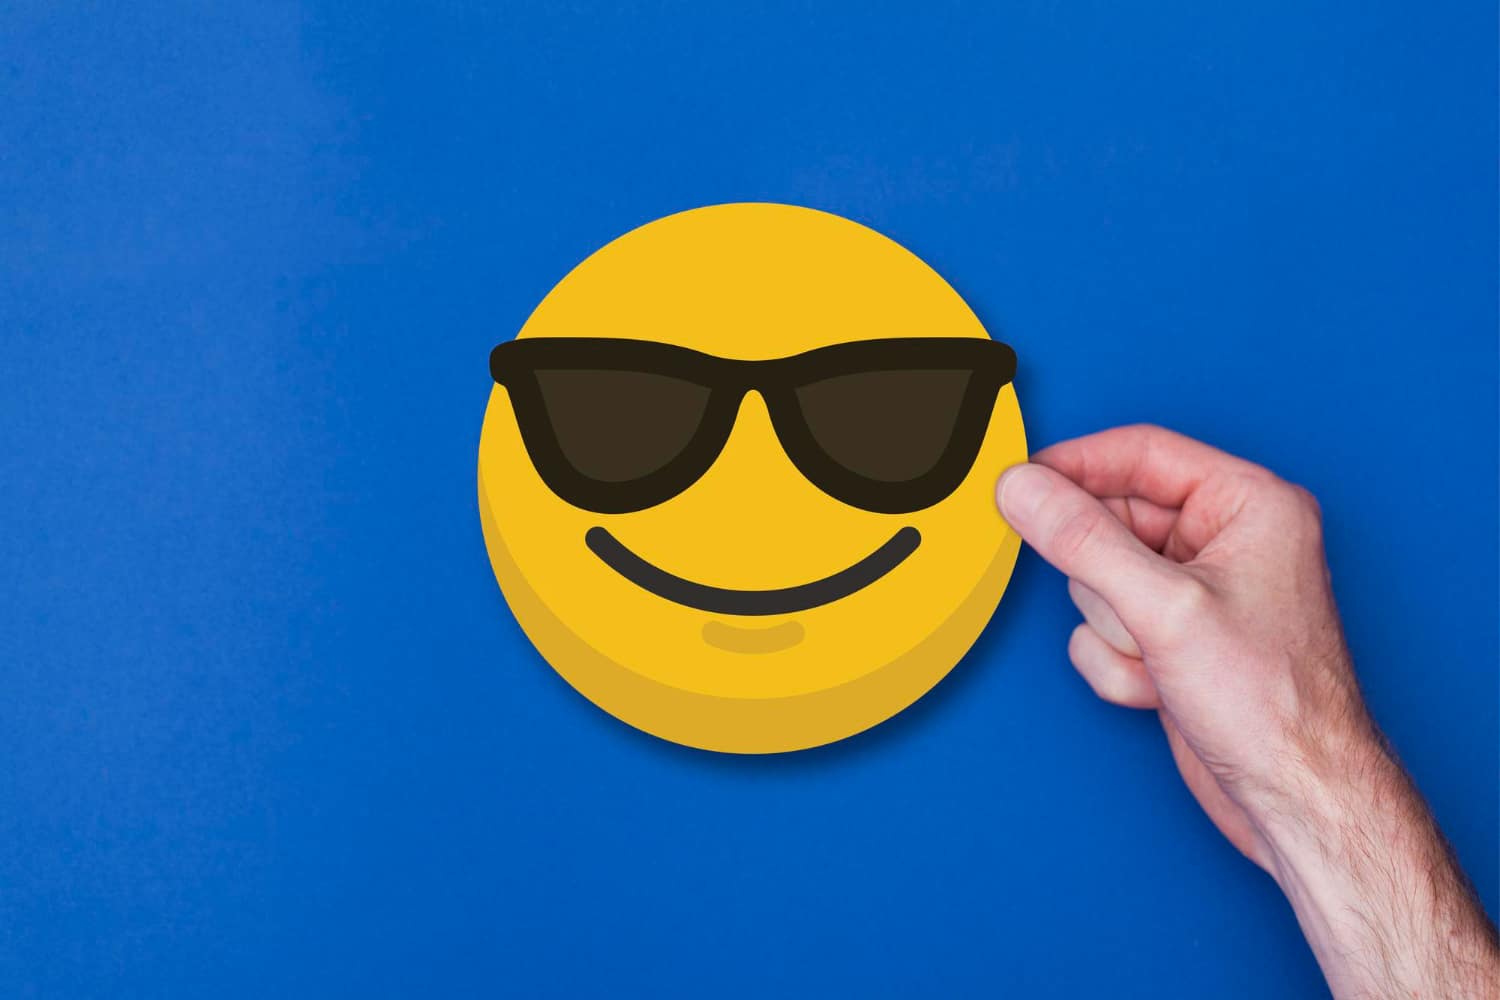  Emoji: Află adevărata semnificație a emoji-ului care zâmbește cu ochelari de soare pe față